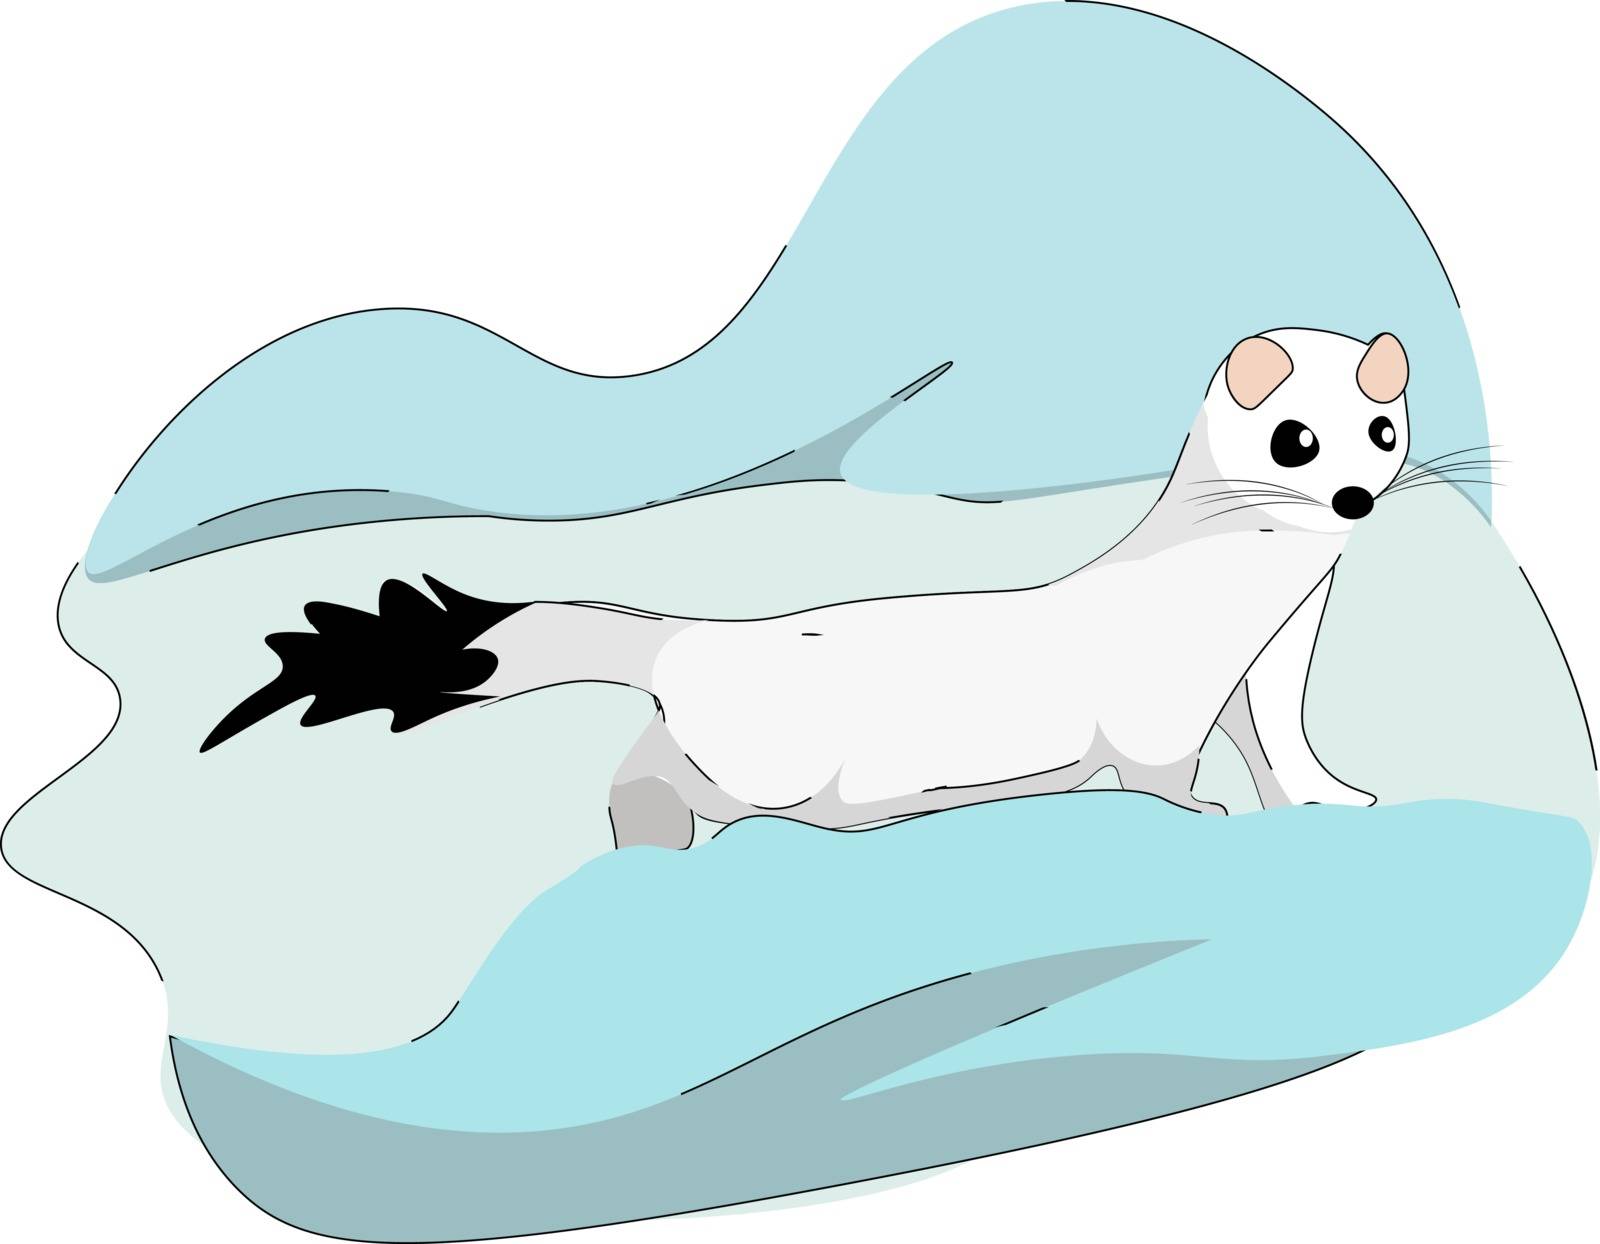 White stoat, illustration, vector on white background. by Morphart